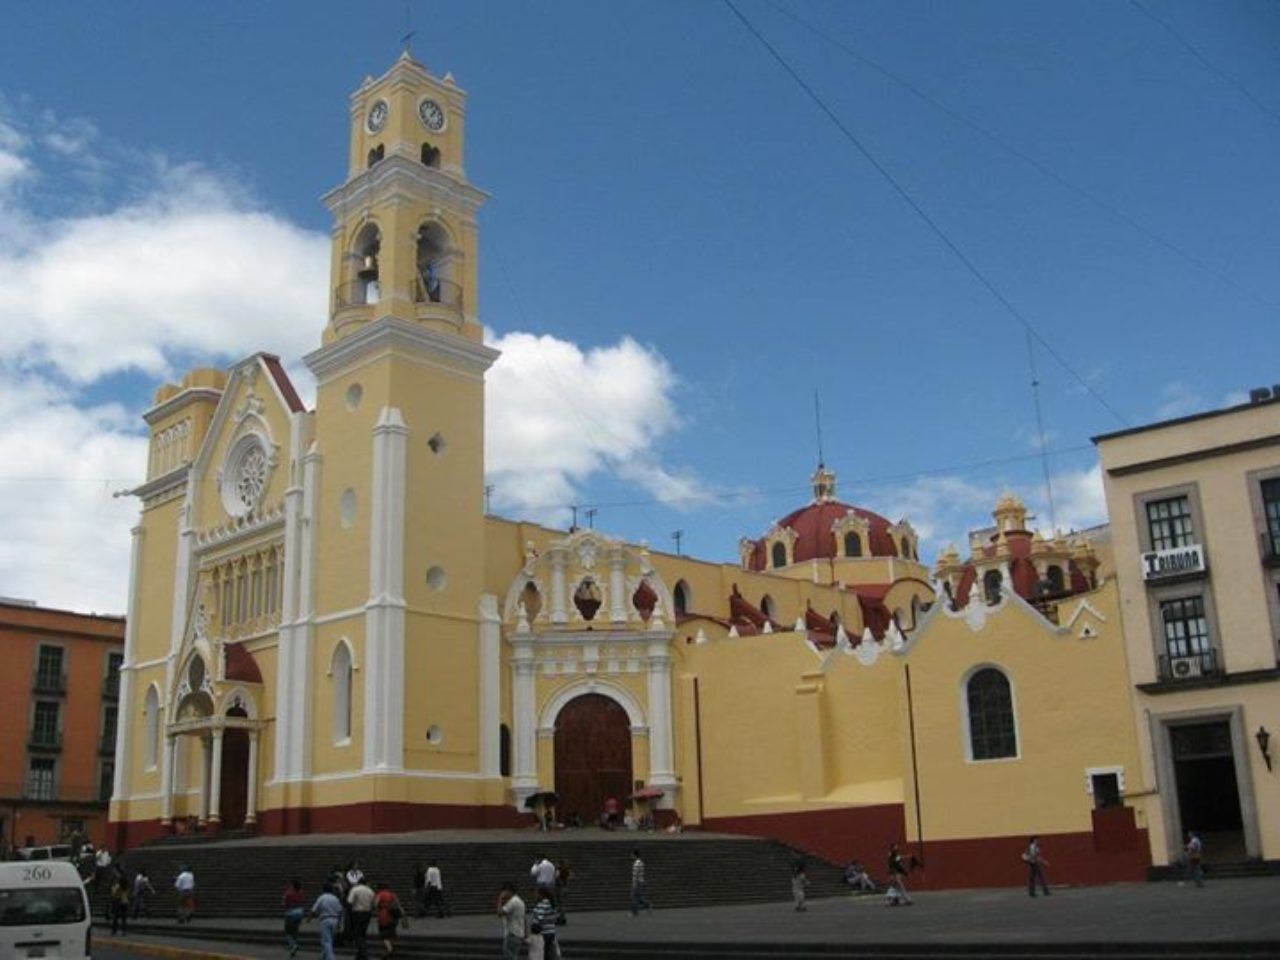 Katedrala u gradu Xalapi/Foto: ECKLER1988, CC BY-SA 4.0/Wikimedia Commons